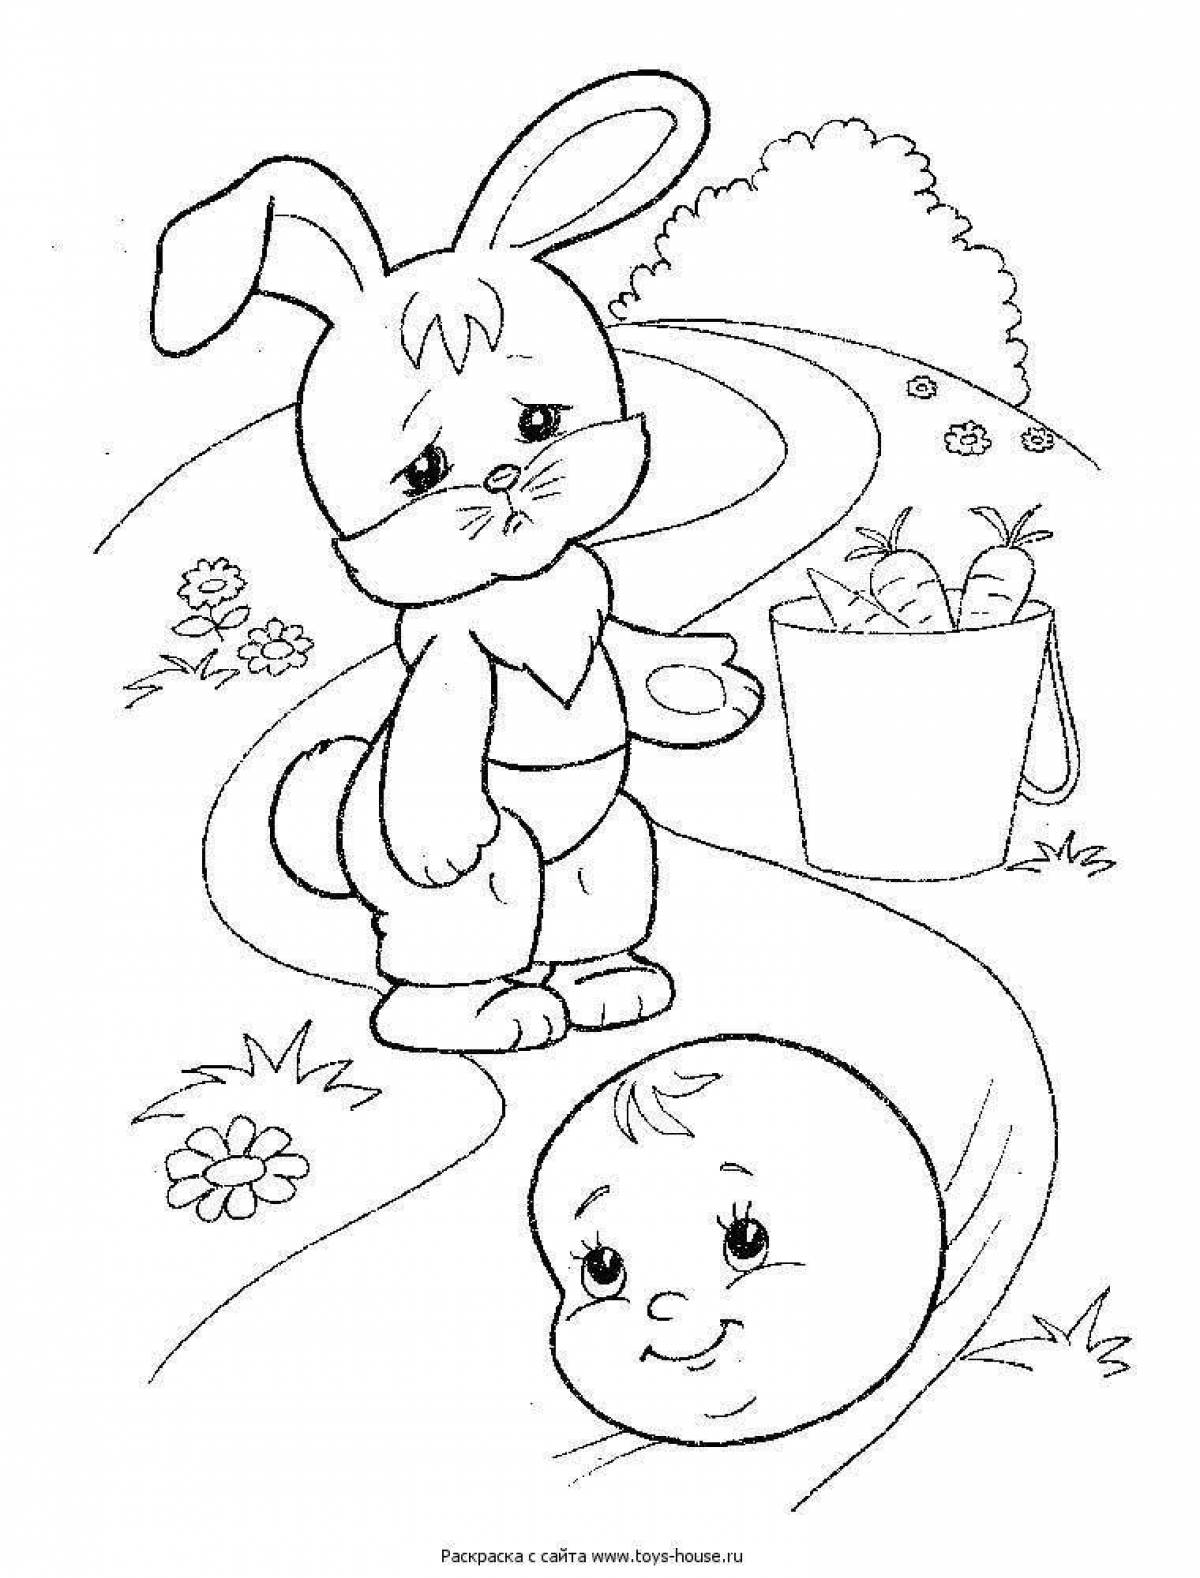 Fairy tale bun coloring book